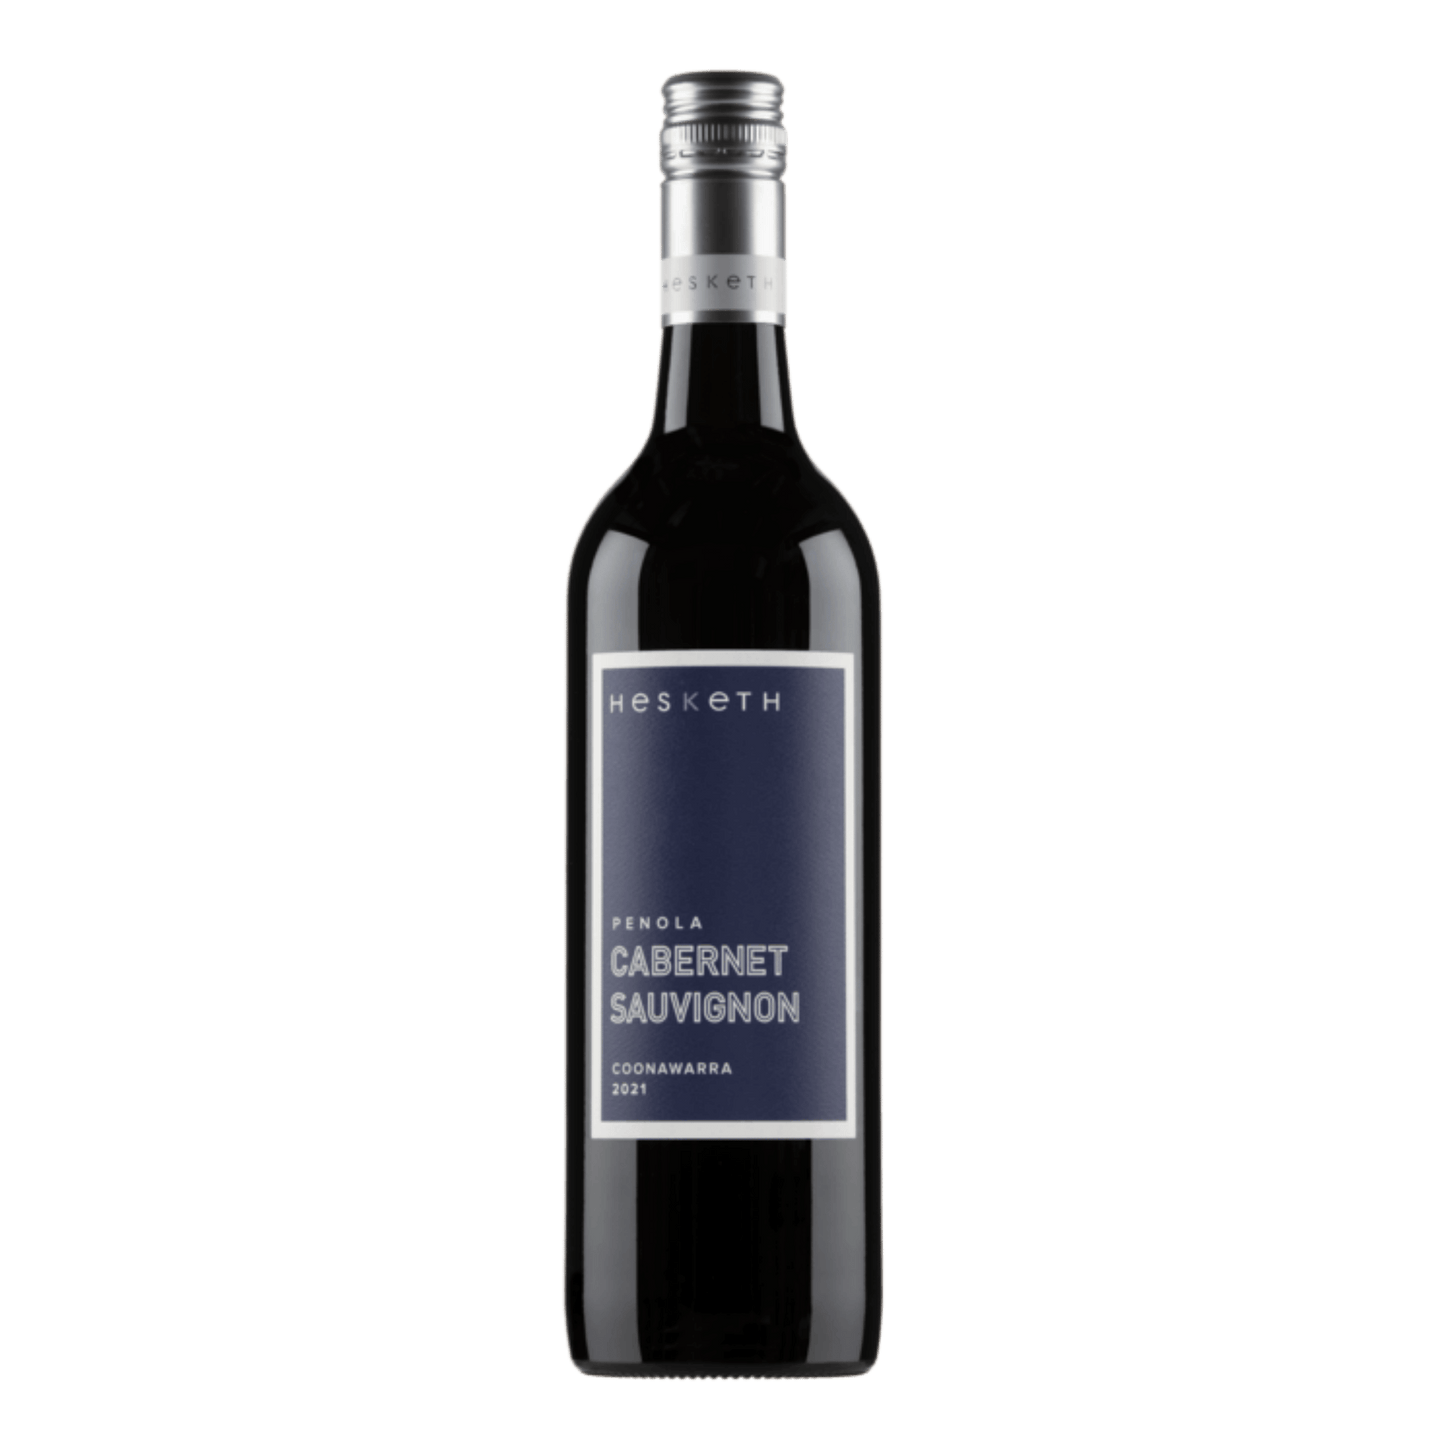 Hesketh Wines 'Penola' Cabernet Sauvignon 2019